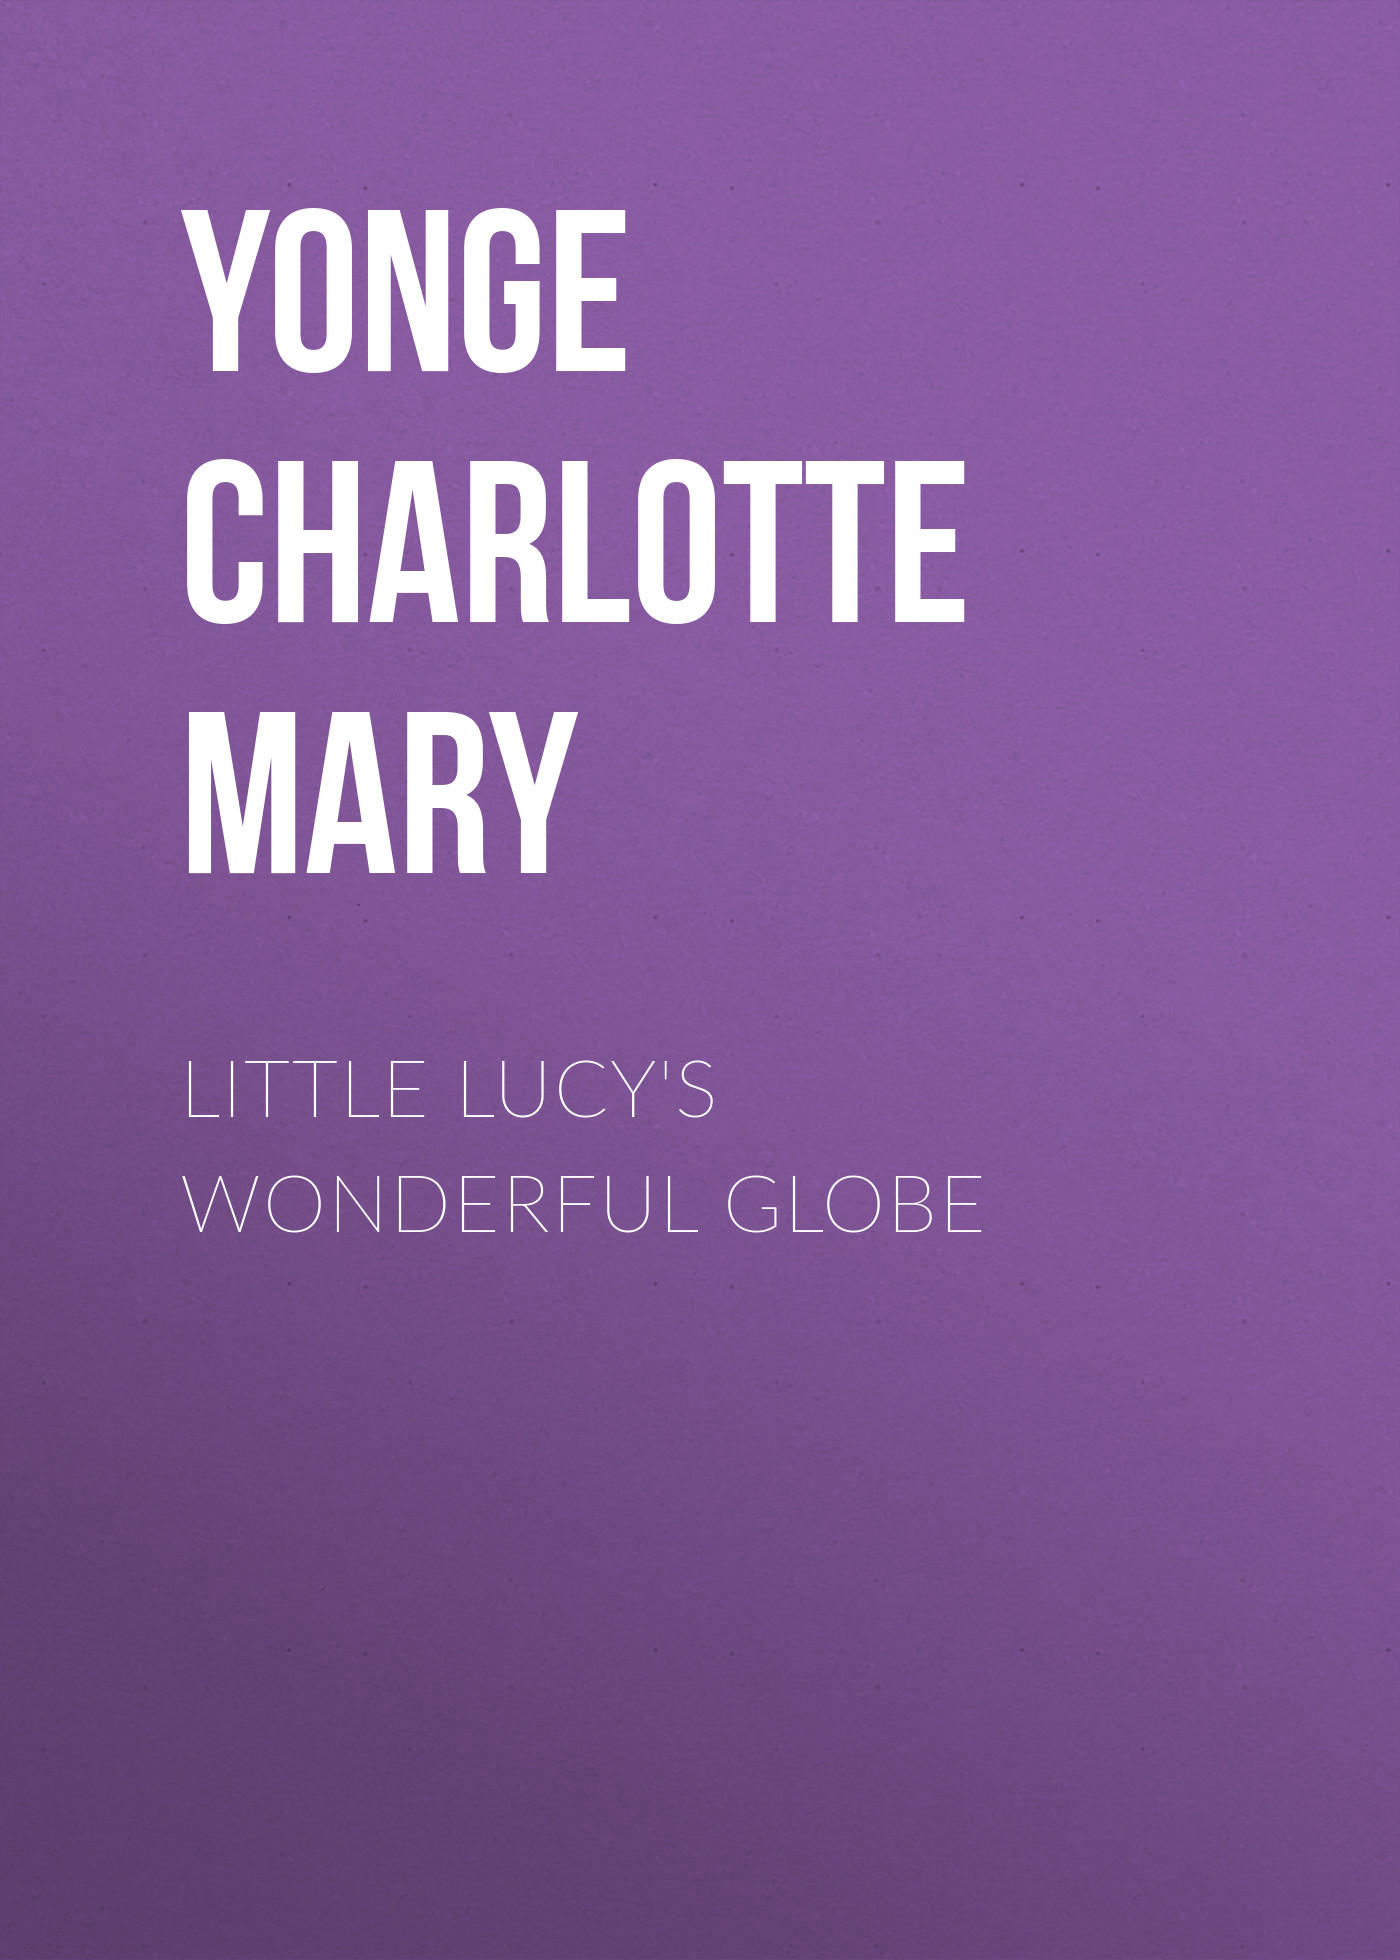 Книга Little Lucy's Wonderful Globe из серии , созданная Charlotte Yonge, может относится к жанру Зарубежные детские книги, Литература 19 века, Зарубежная старинная литература, Зарубежная классика. Стоимость электронной книги Little Lucy's Wonderful Globe с идентификатором 36093533 составляет 0 руб.